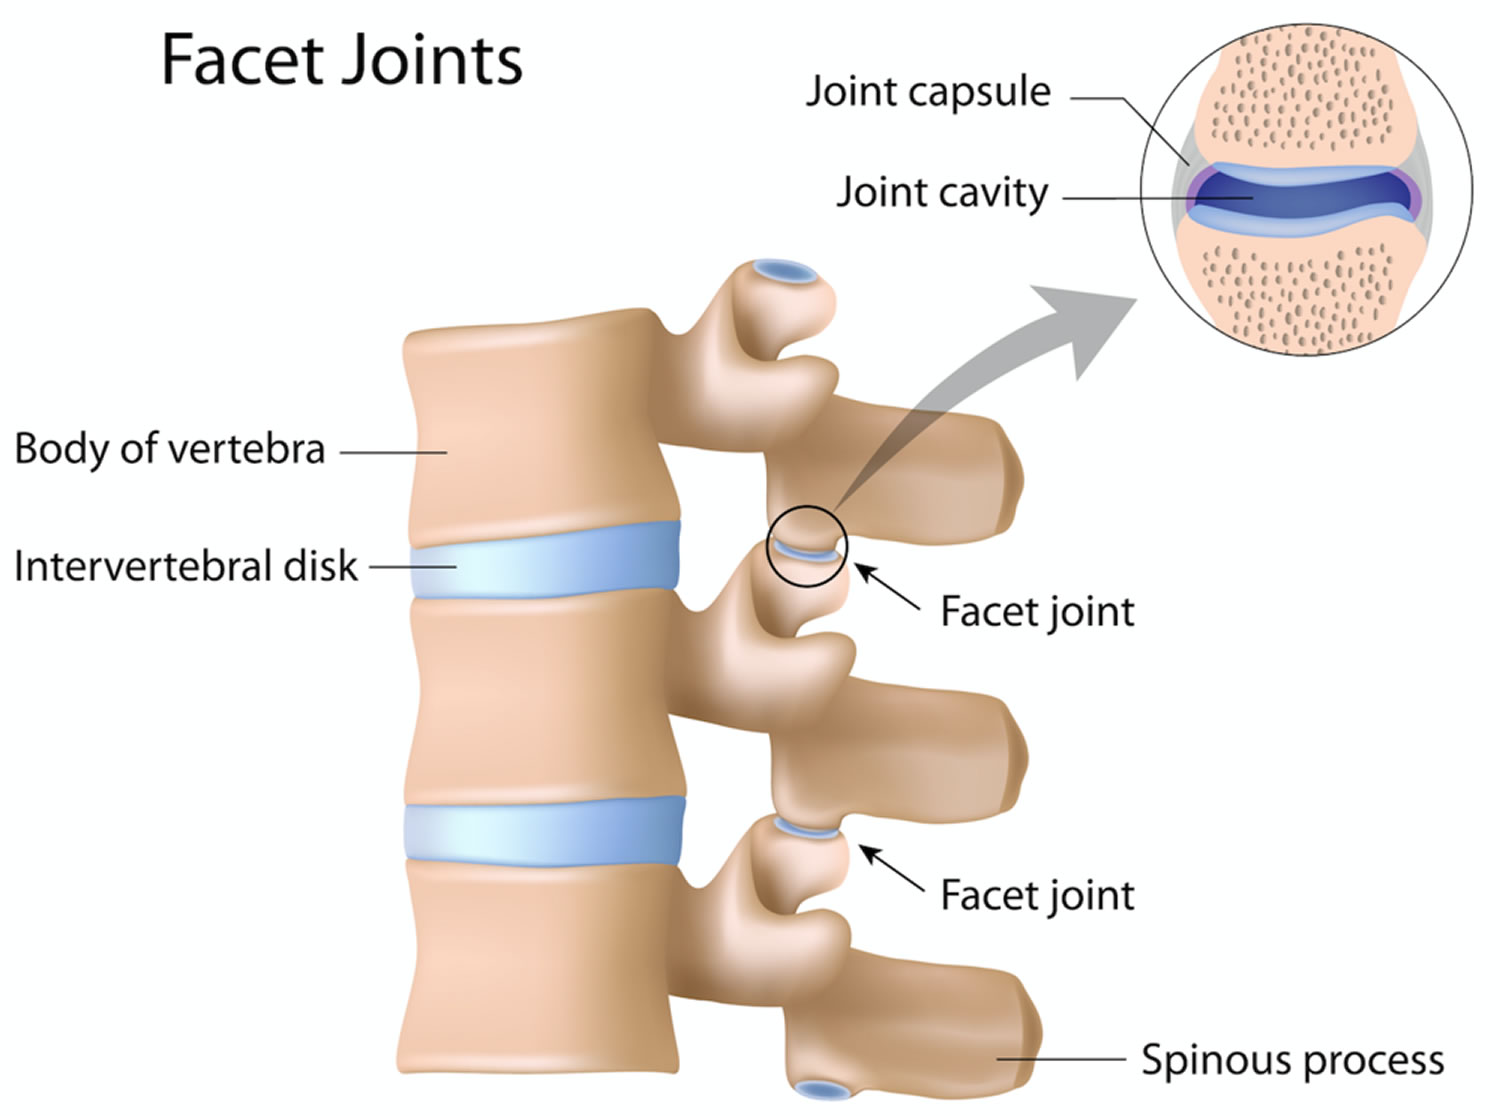 Facet joints